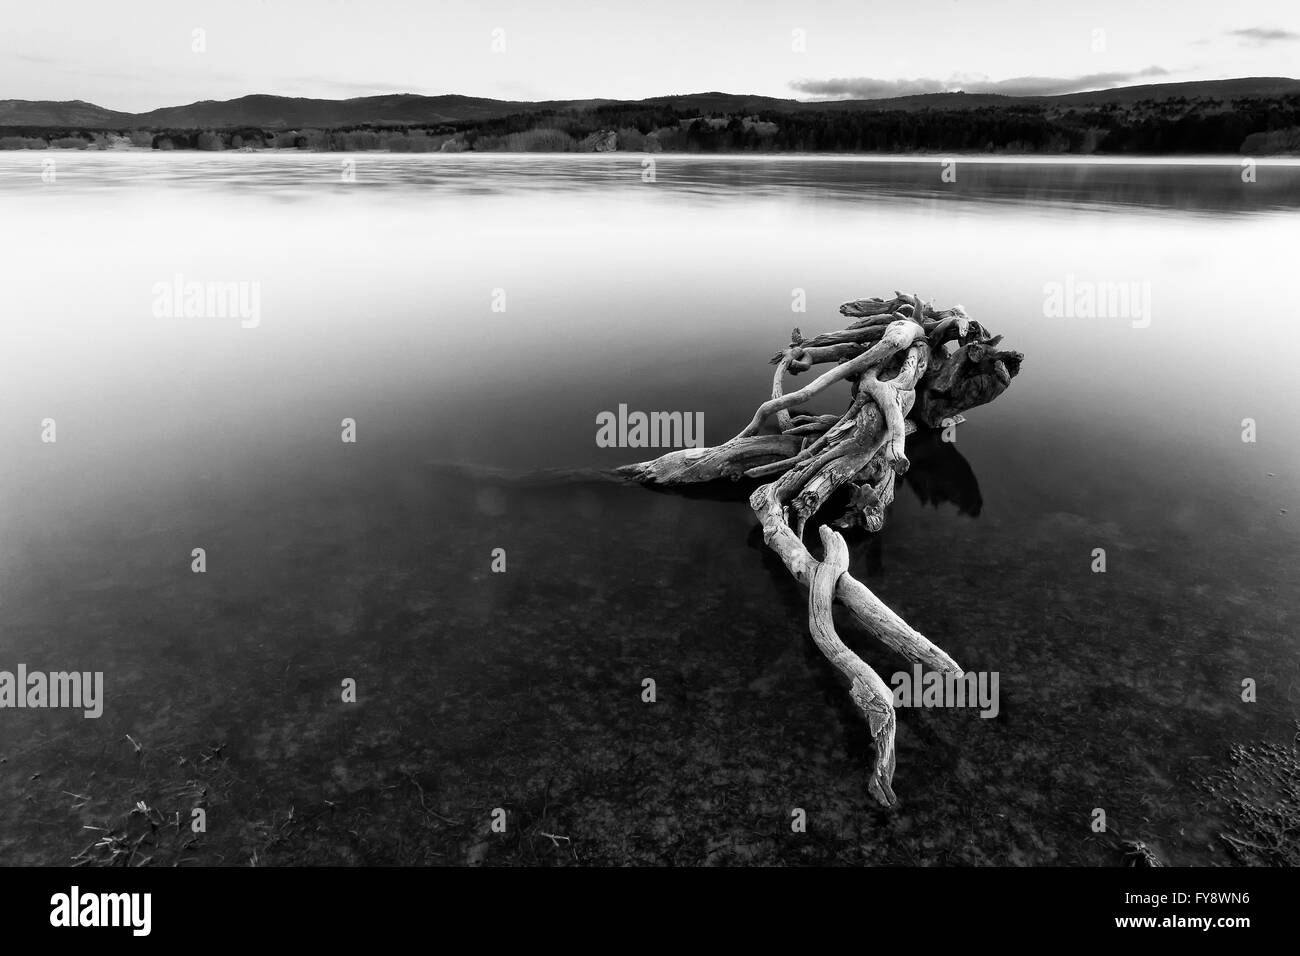 Spain, Soria, root in water of reservoir of La Cuerd la del Pozo Stock Photo